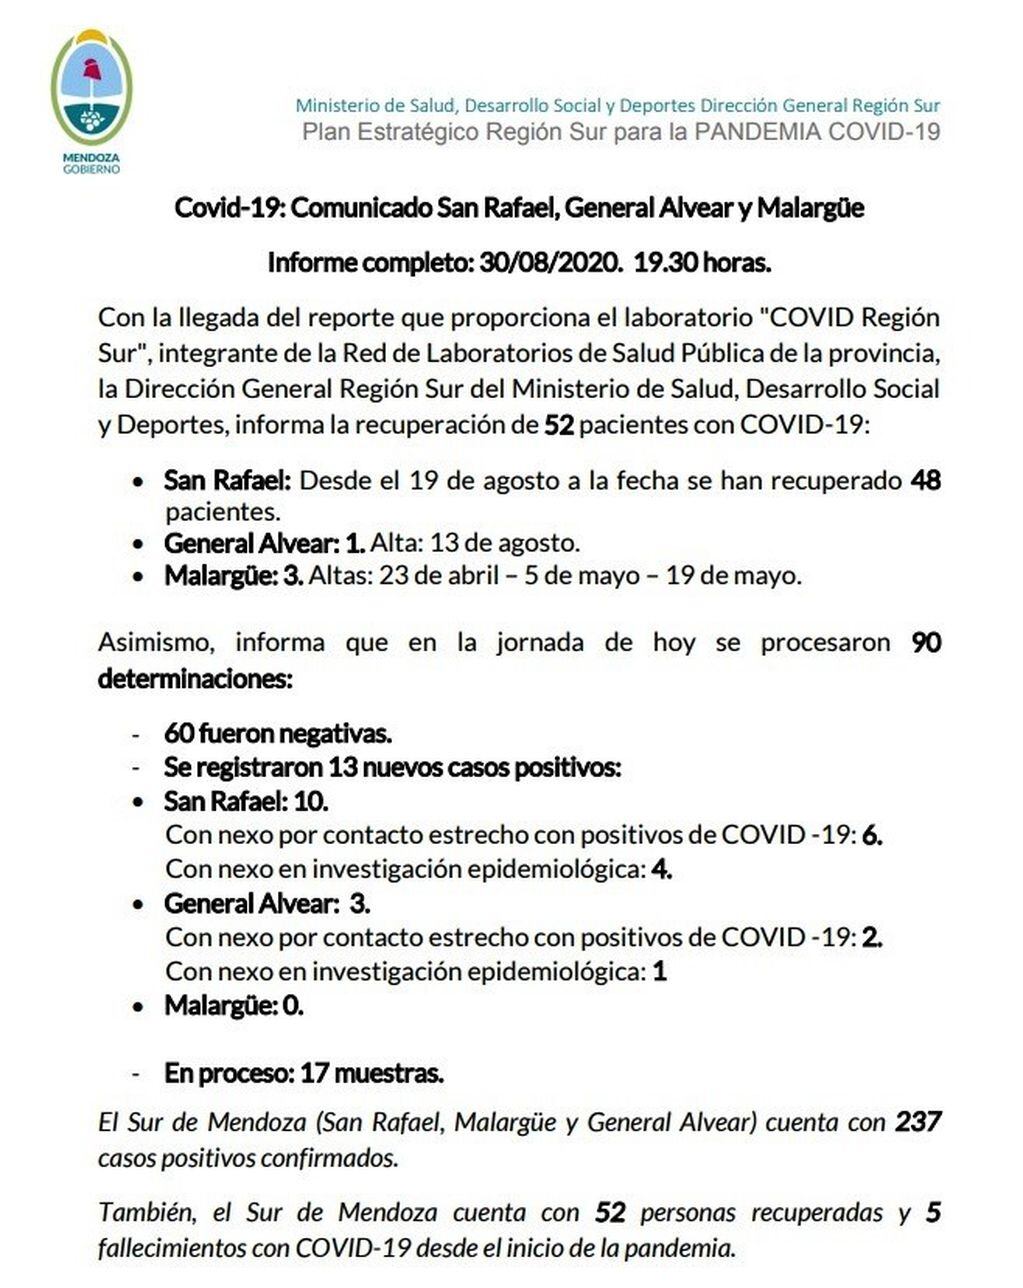 Comunicado Covid Sur de Mendoza 30/08/2020